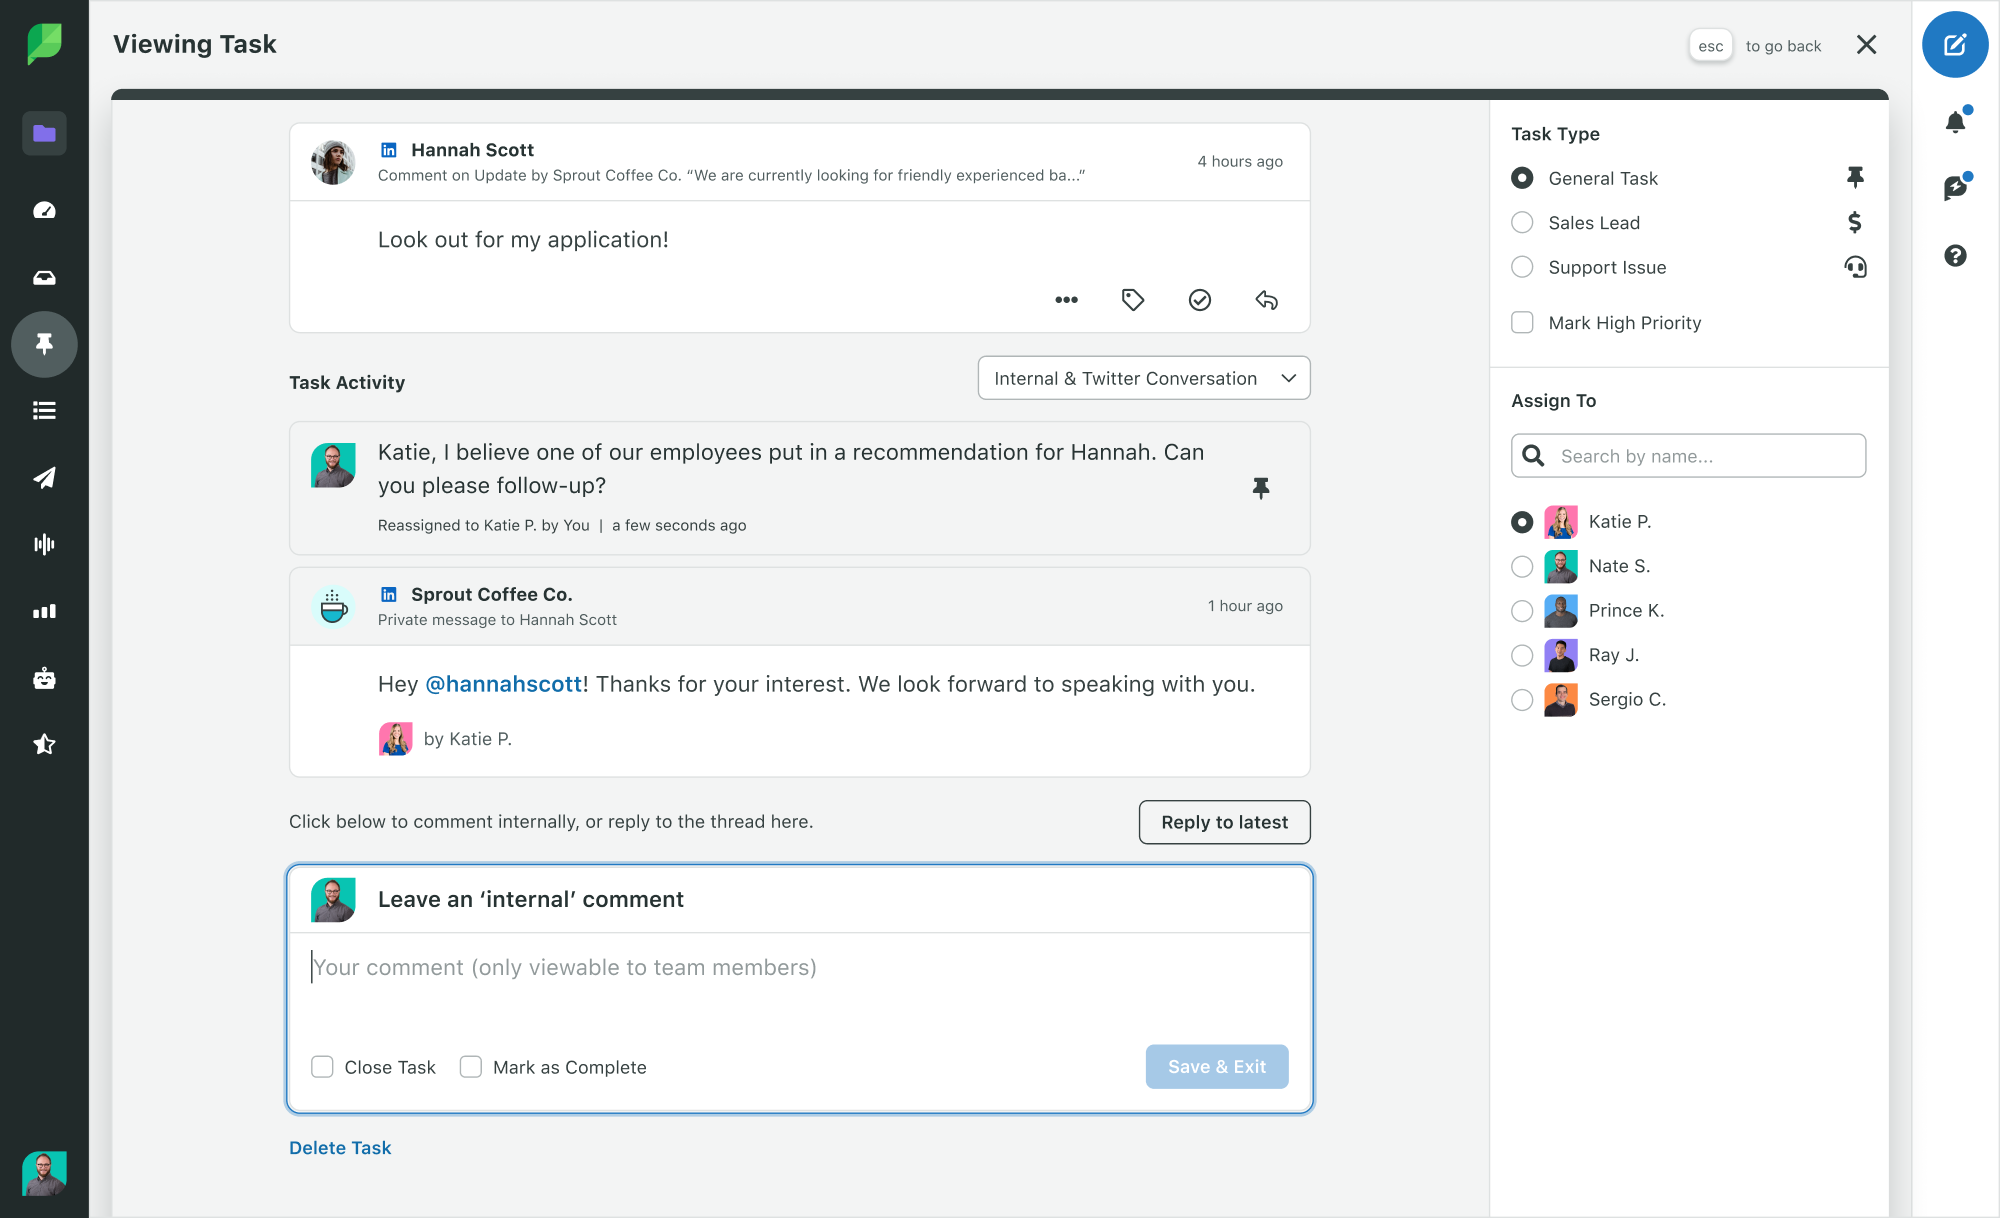 Image de Sprout Social montrant les tâches d'engagement avec l'historique des activités LinkedIn